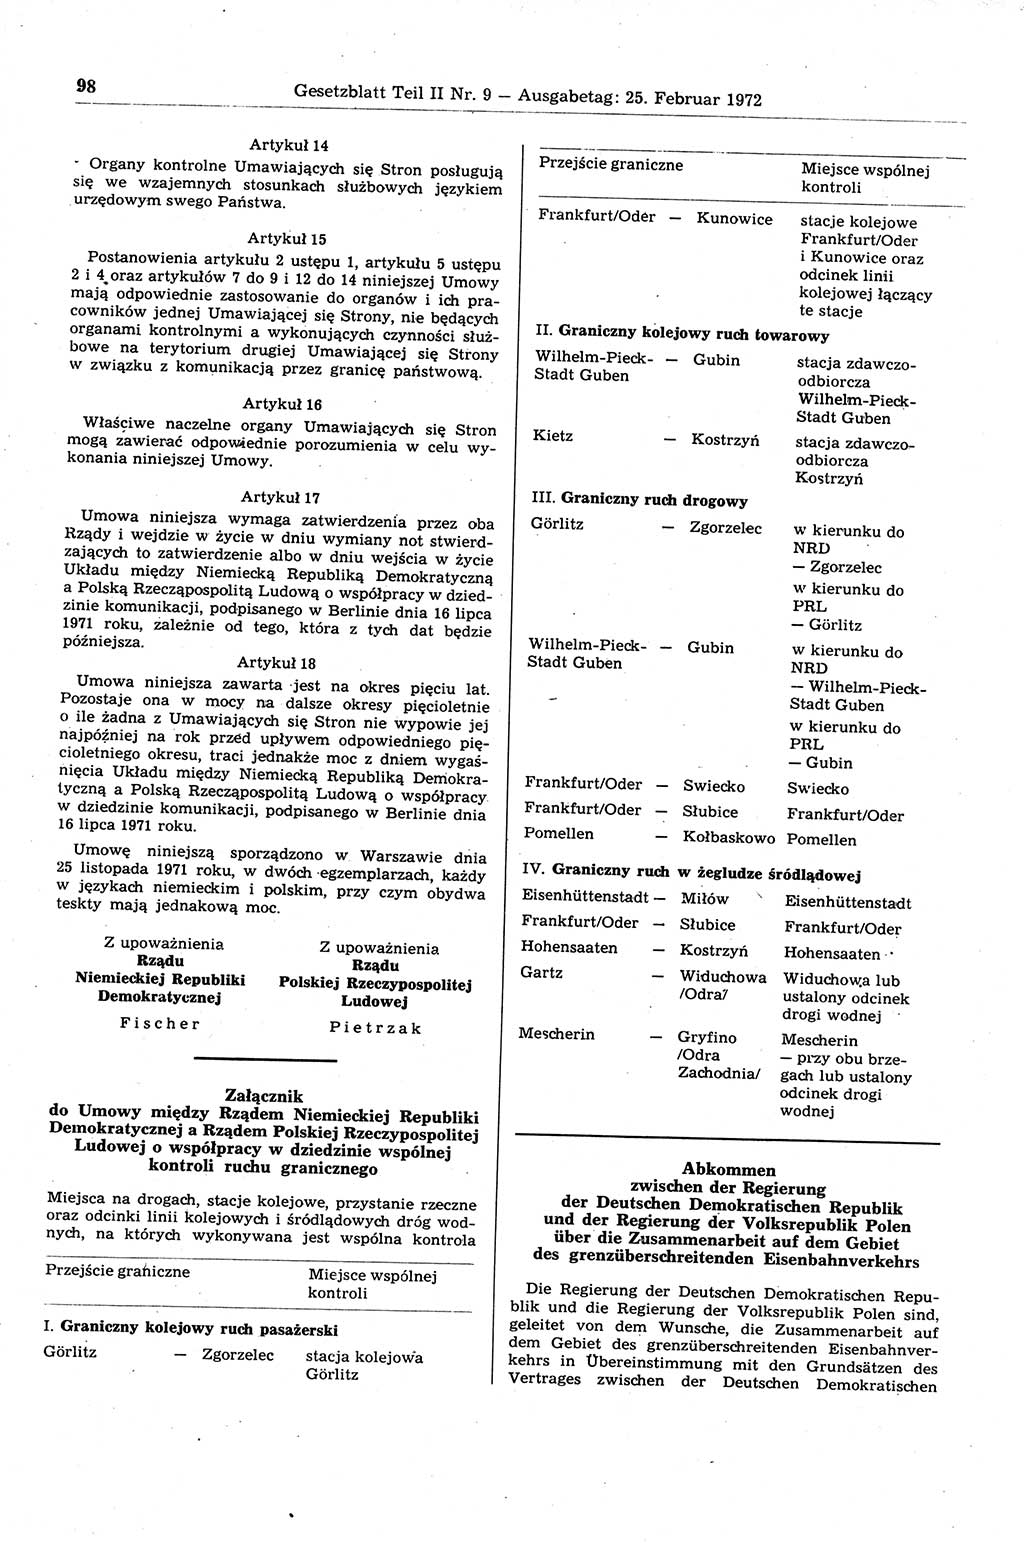 Gesetzblatt (GBl.) der Deutschen Demokratischen Republik (DDR) Teil ⅠⅠ 1972, Seite 98 (GBl. DDR ⅠⅠ 1972, S. 98)